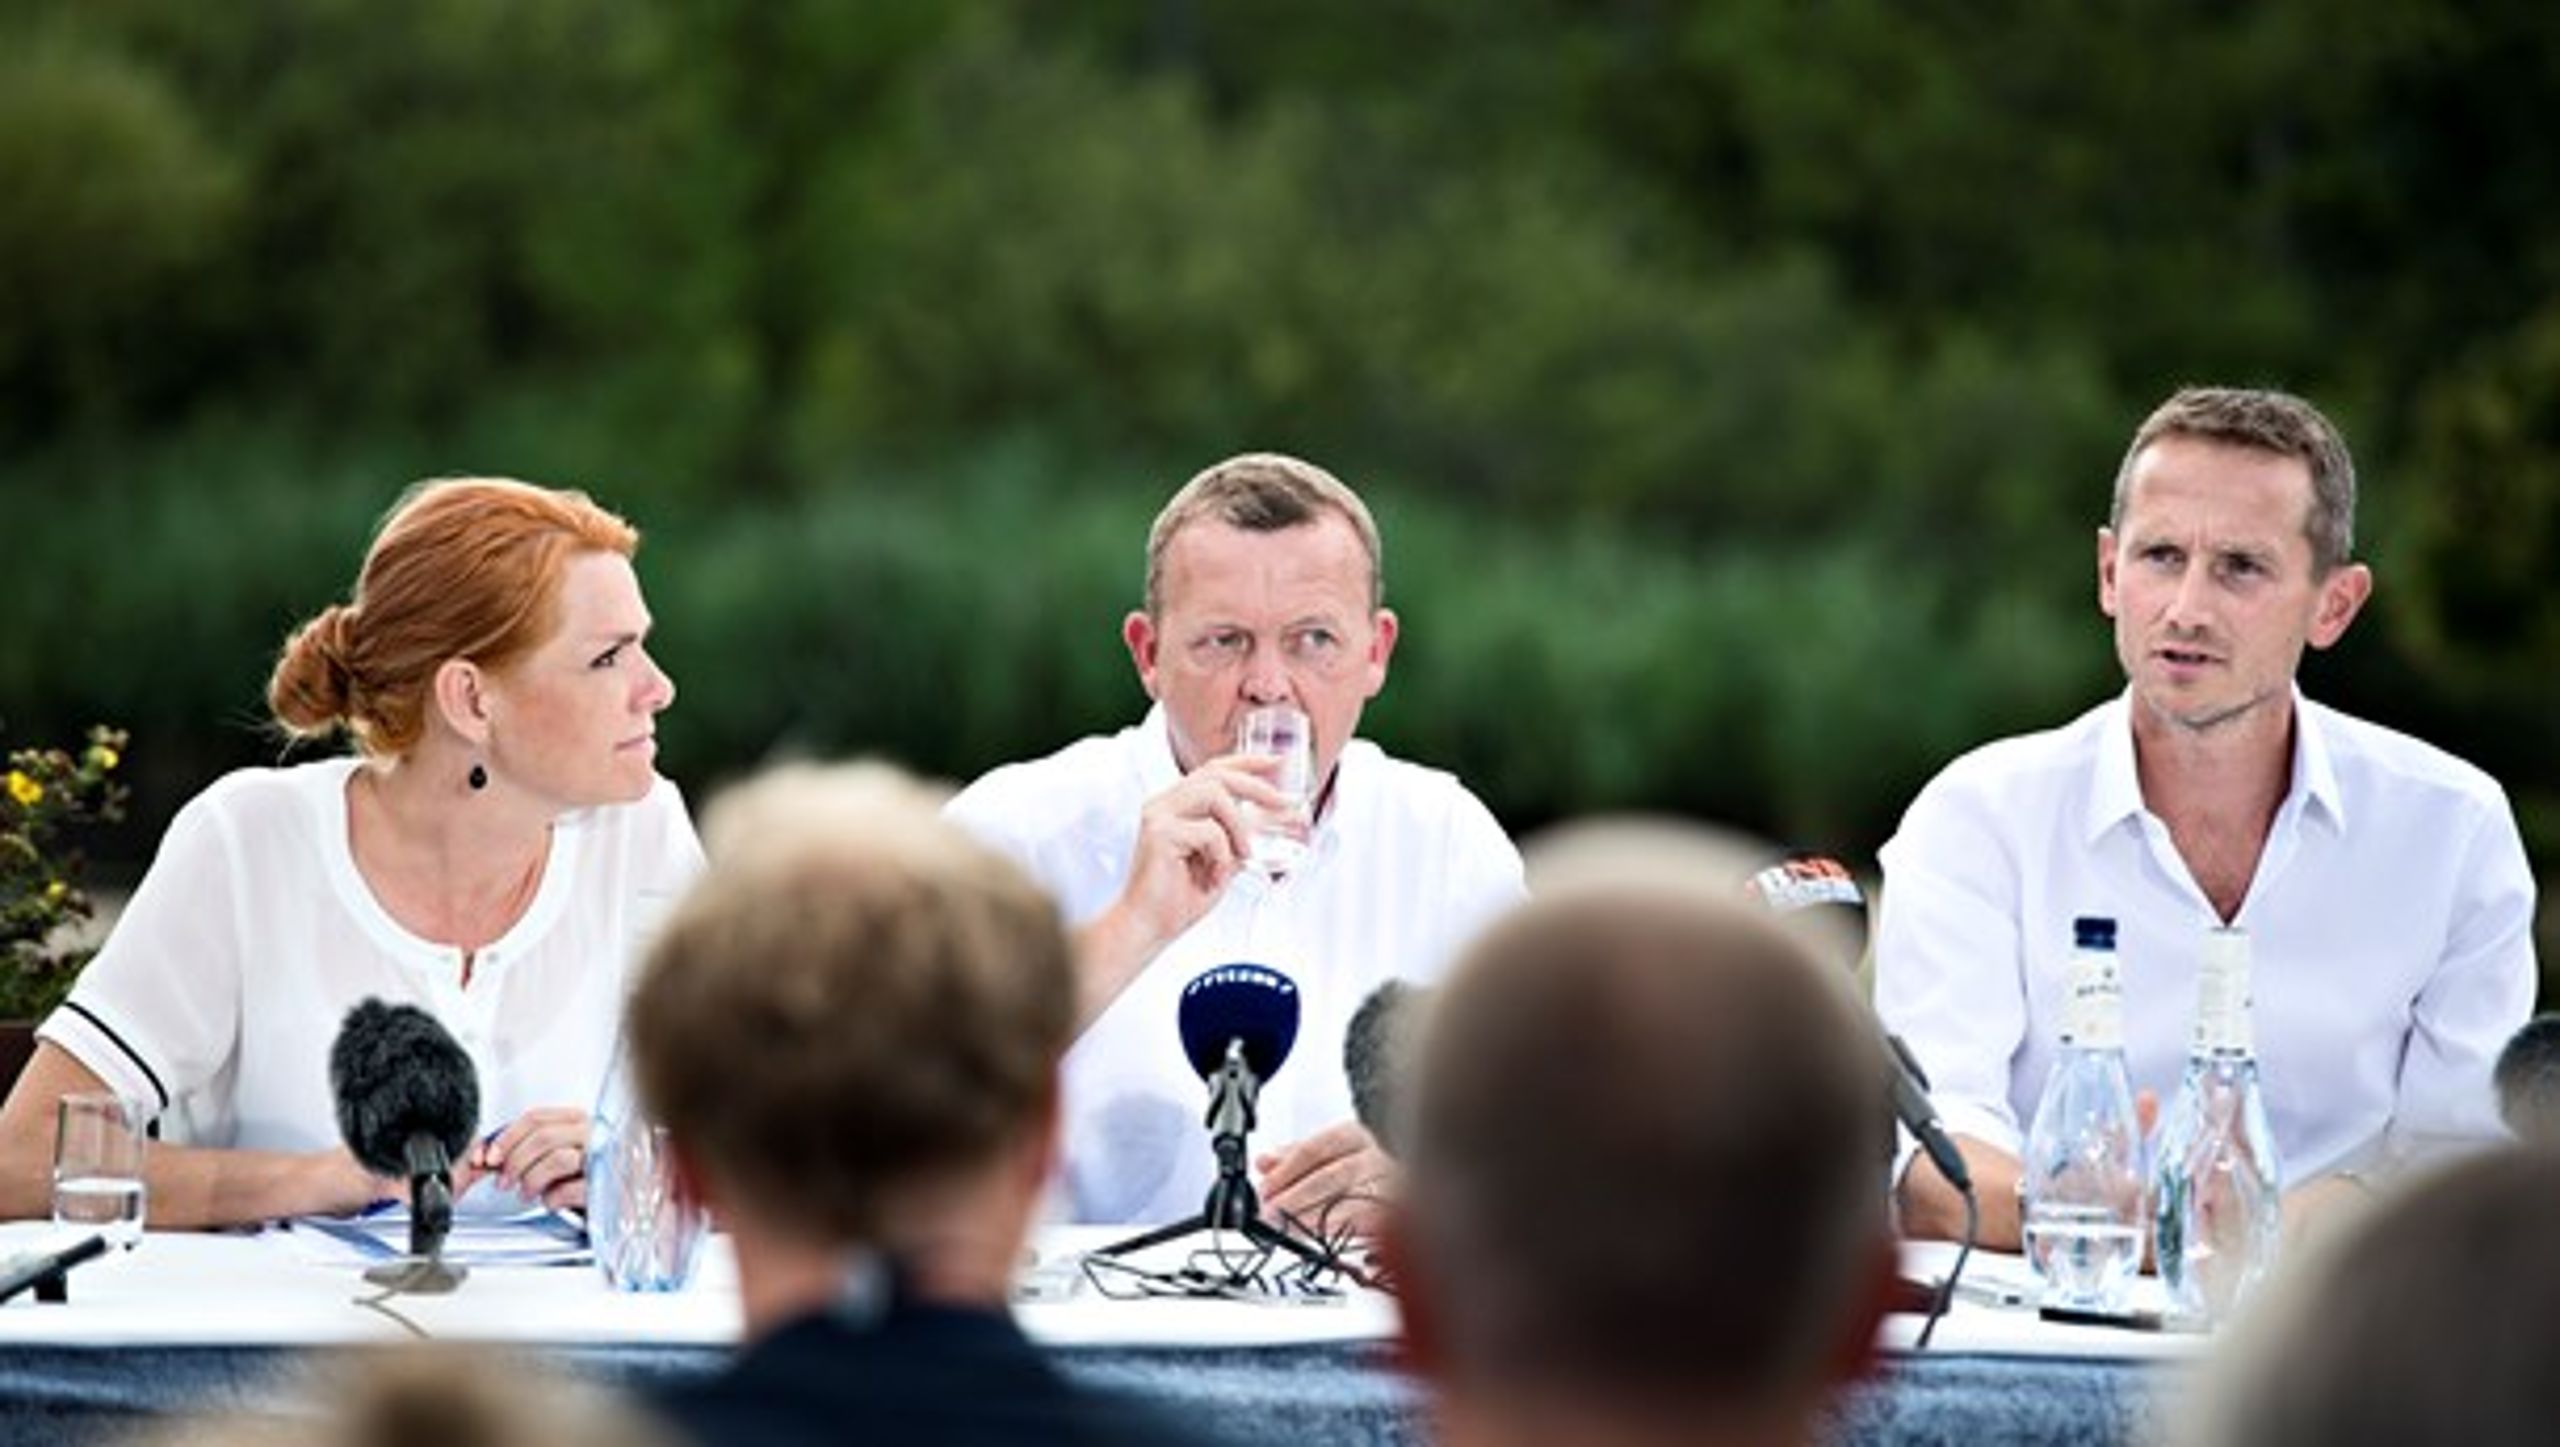 Lars Løkke Rasmussen flankeret af Kristian Jensen og Inger Støjberg ved Venstres sommergruppemøde i 2014. Før mødet havde Støjberg skrevet en kras kronik om manglende muslimsk integration, og straks steg Venstre markant i meningsmålingerne. Det lagde man mærke til i partiet.<br>